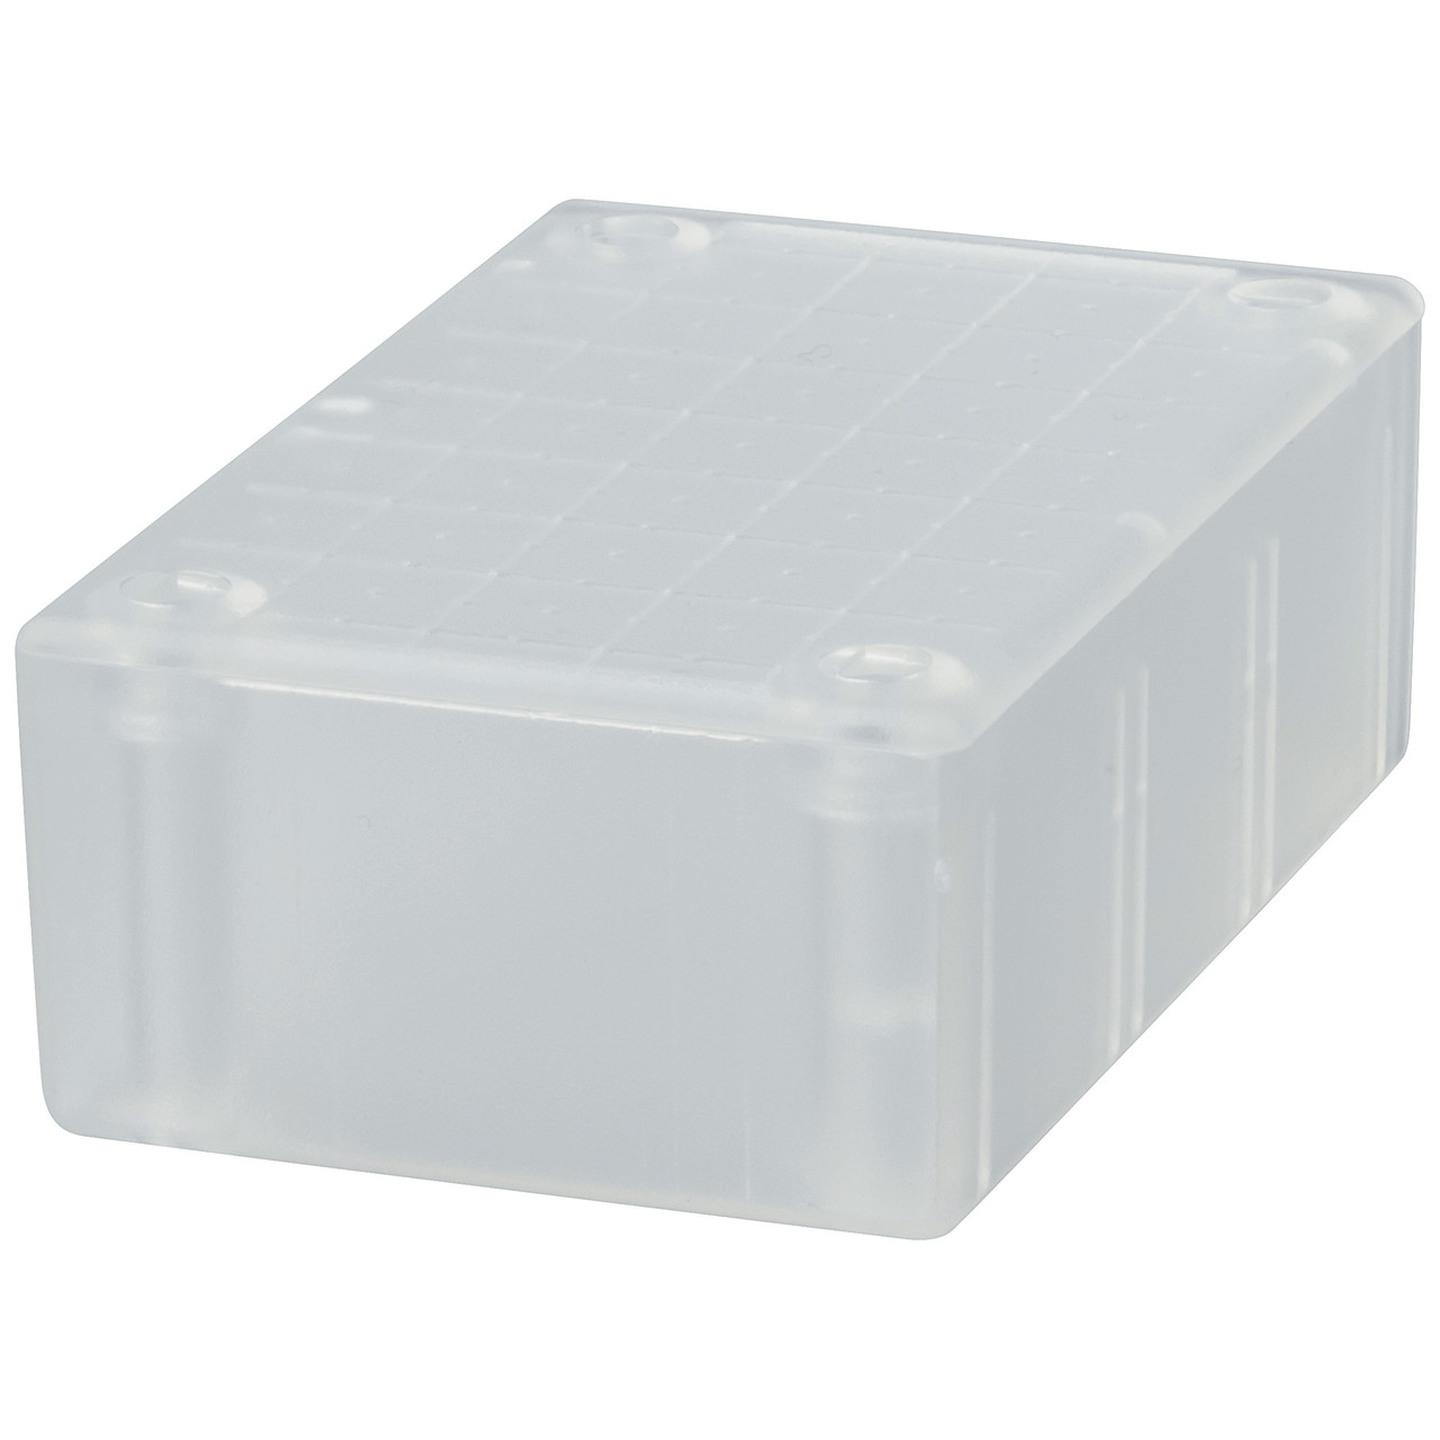 Jiffy Box - Clear - 83 x 54 x 31mm